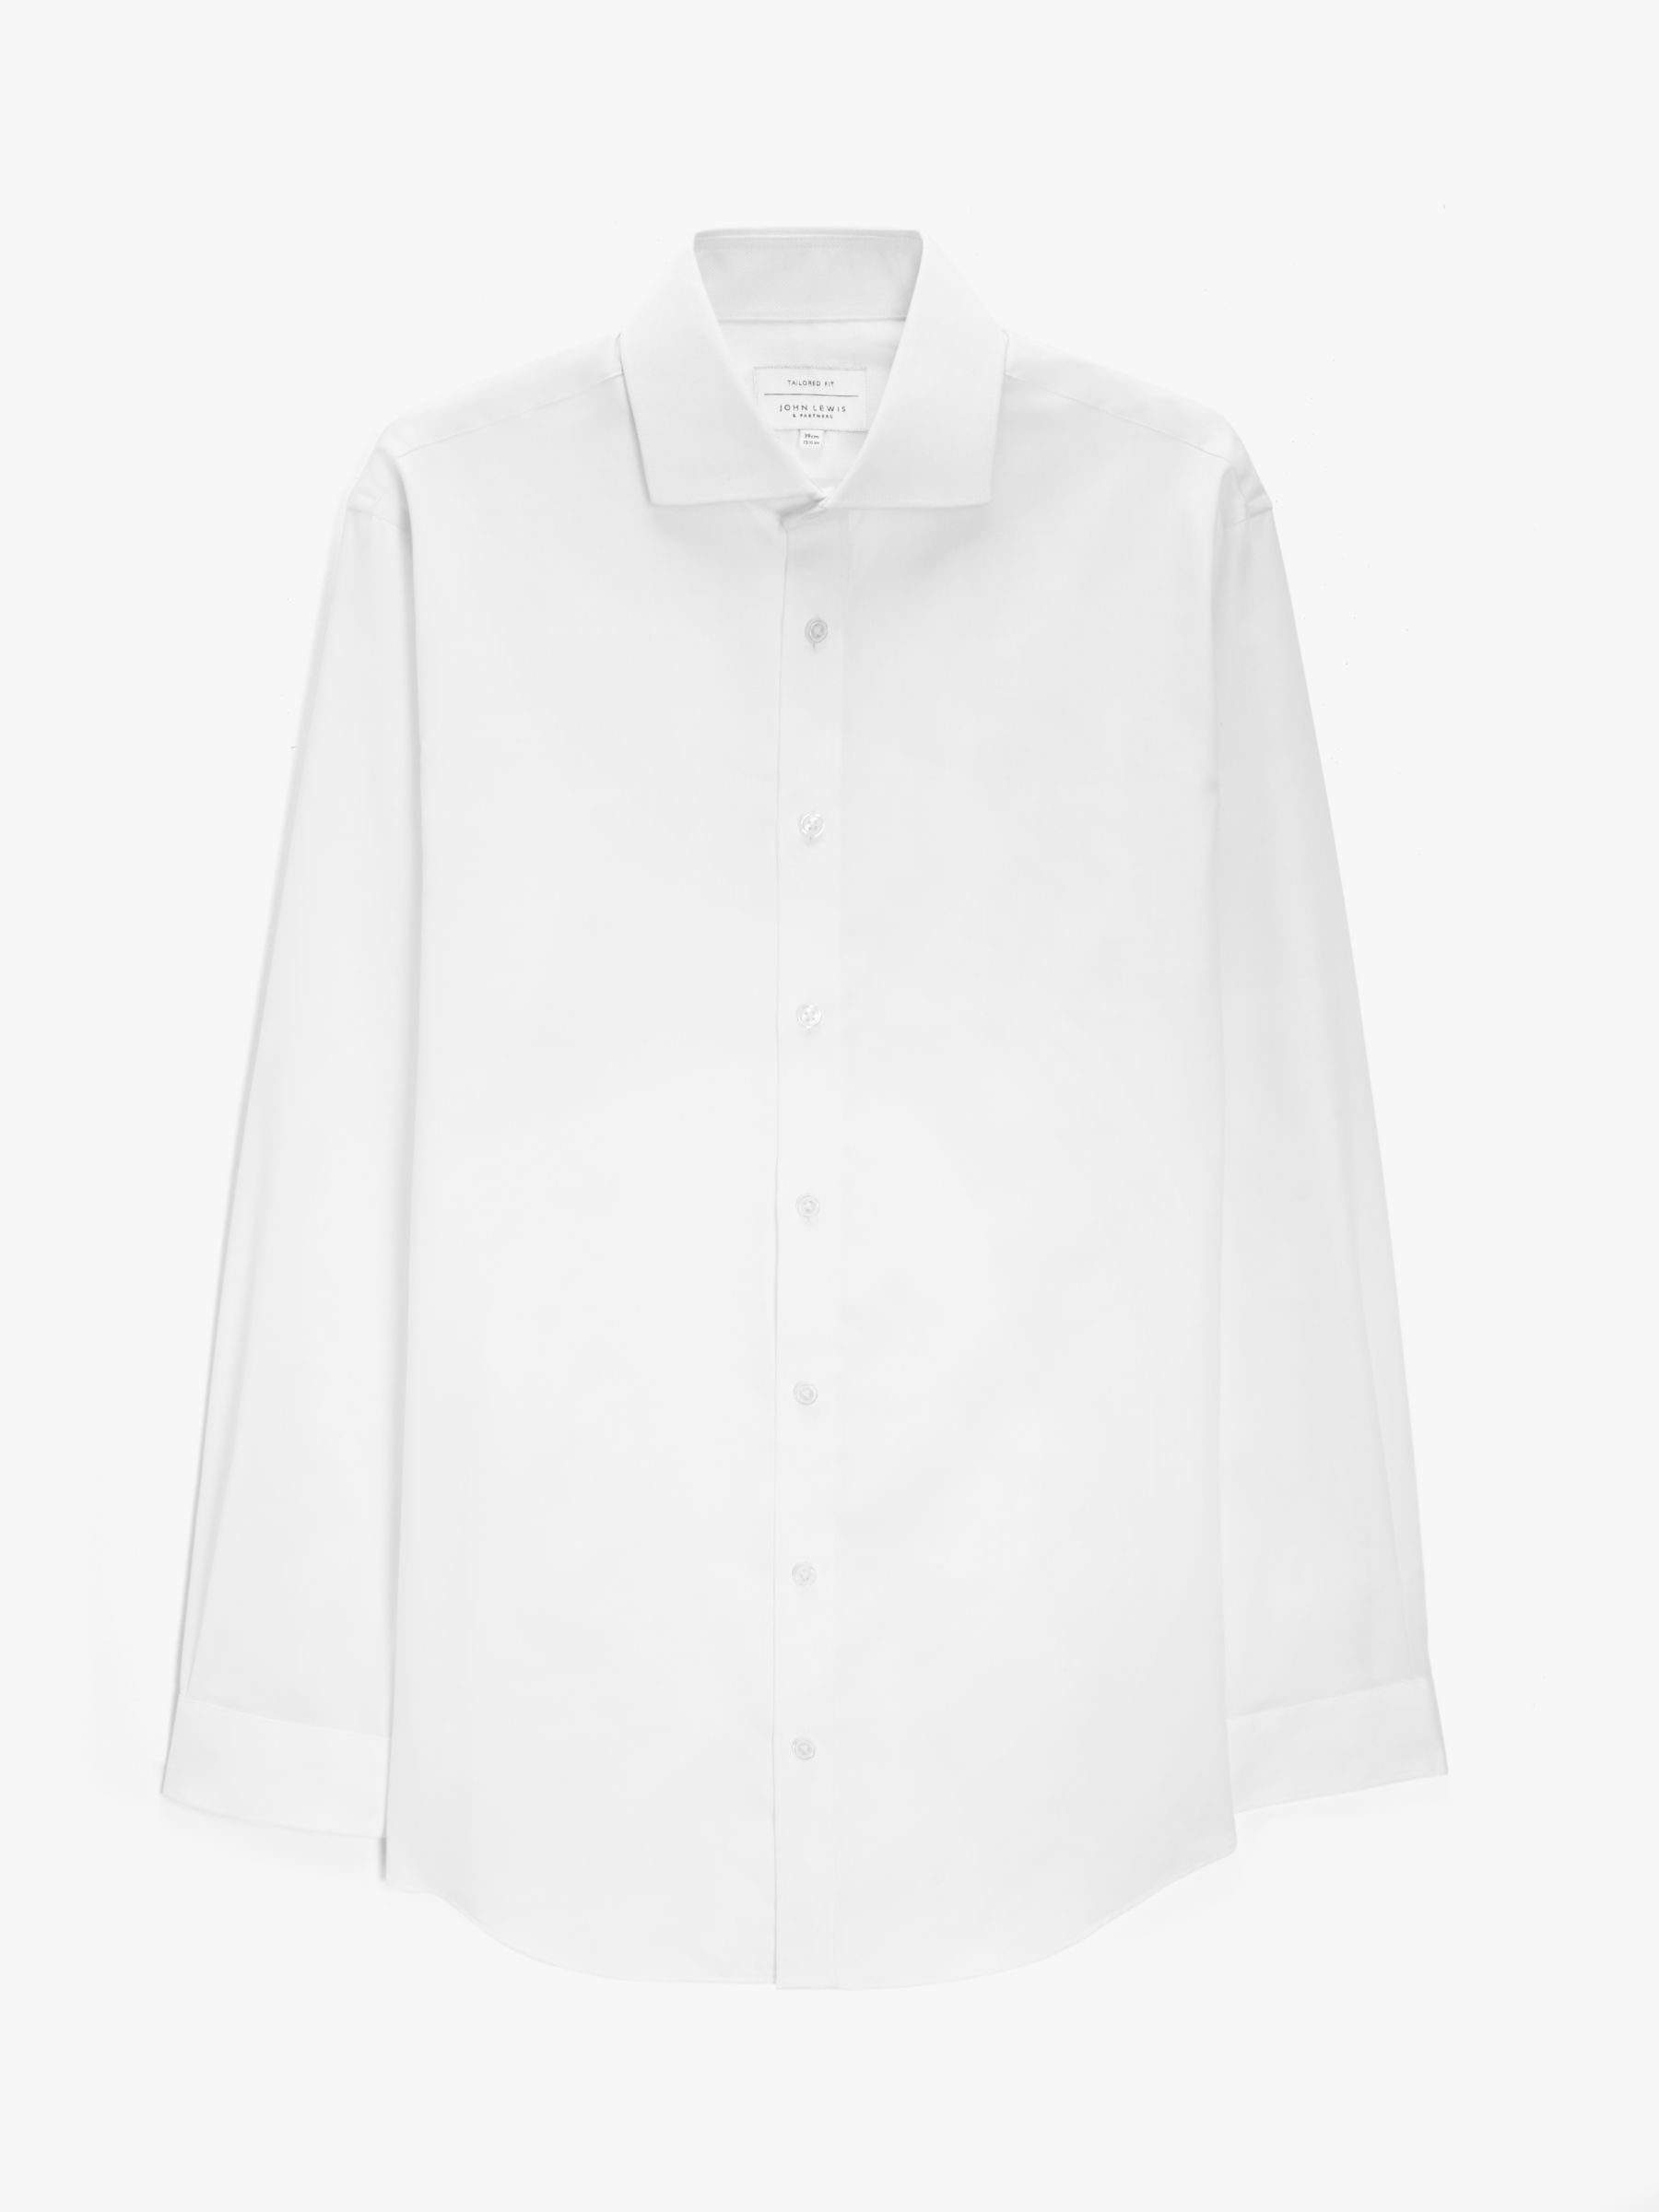 John Lewis Non Iron Dobby Tailored Fit Shirt, White, 15